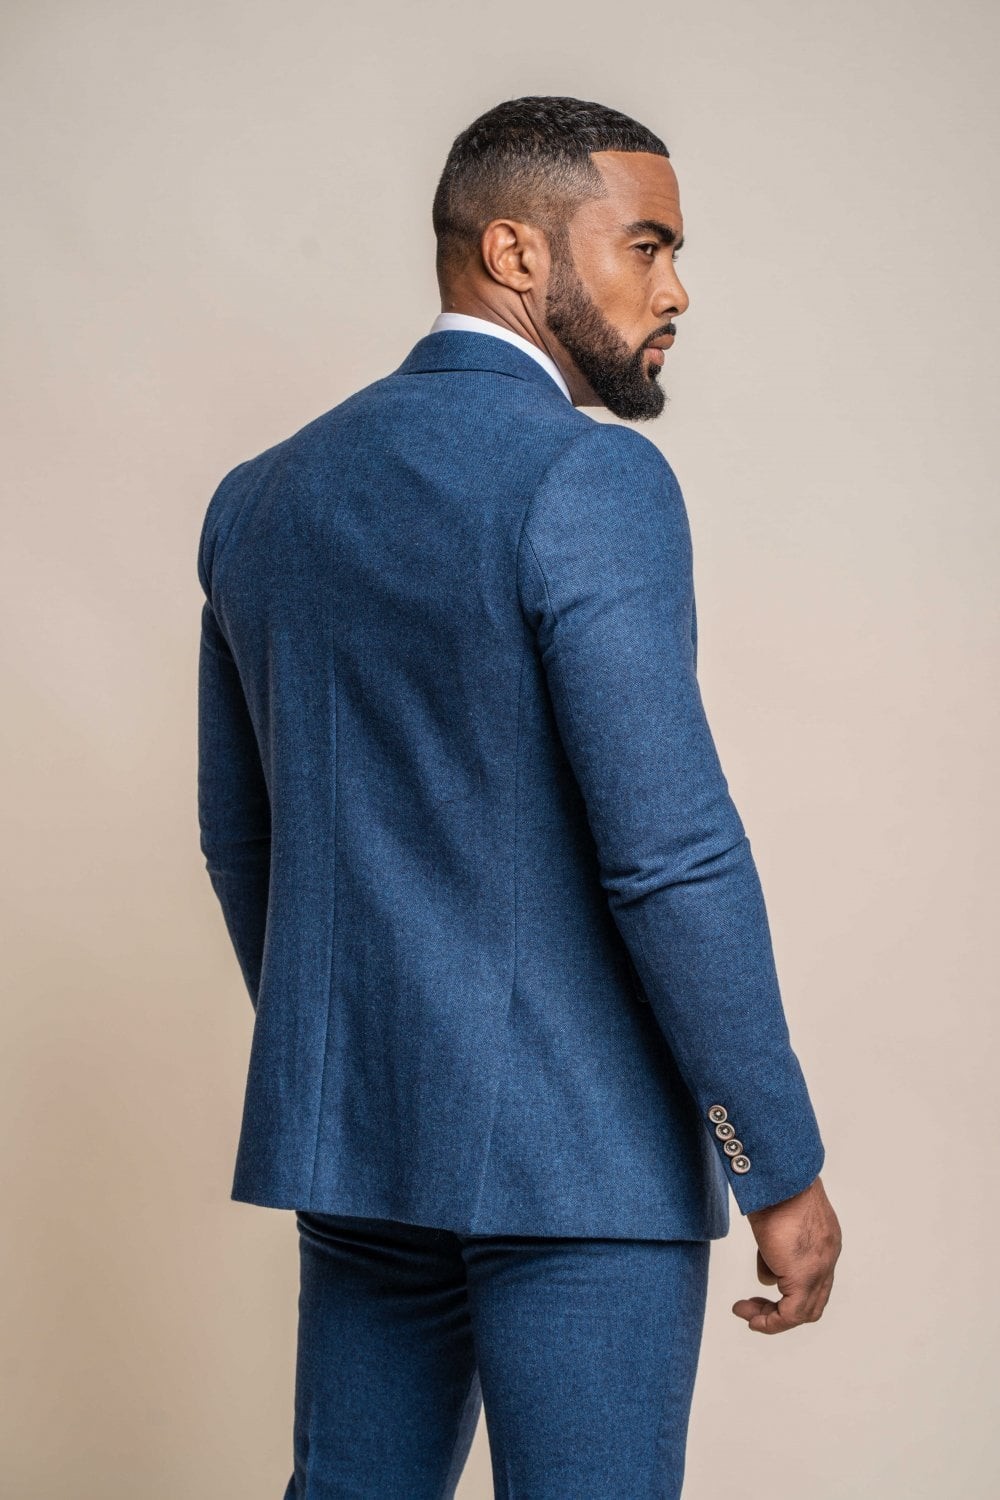 Men's Tweed Wool Slim Fit Formal Blue Suit Jacket - ORSON